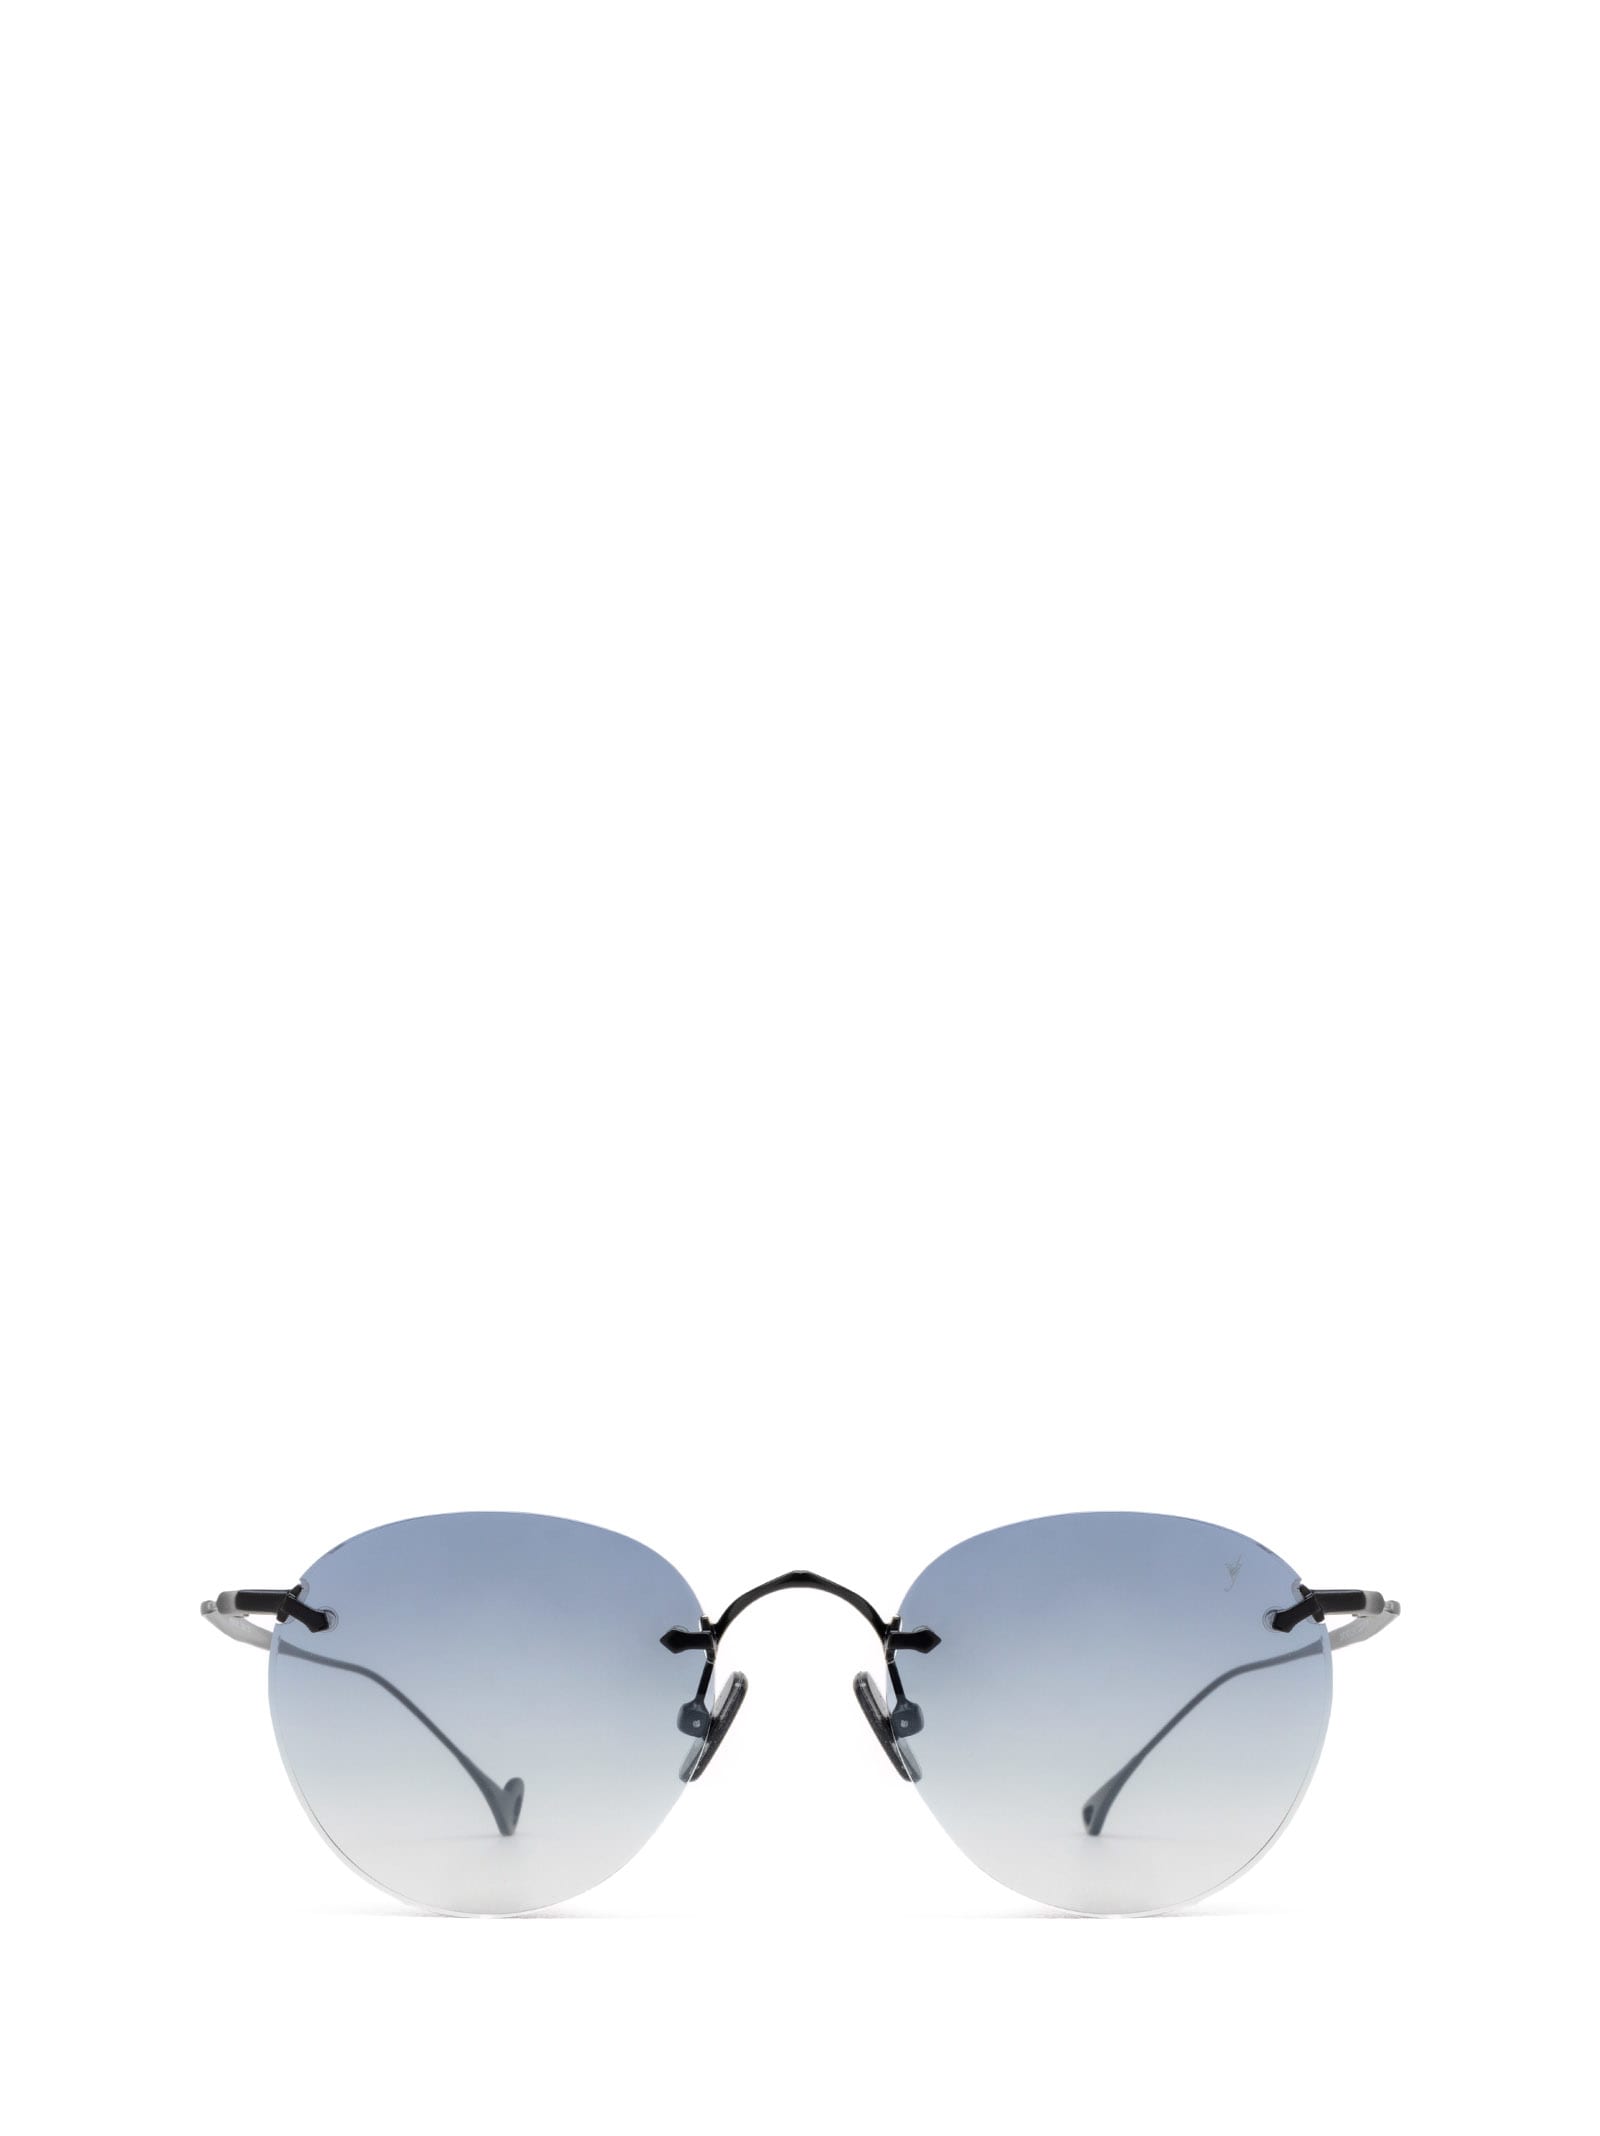 Oxford Black Sunglasses